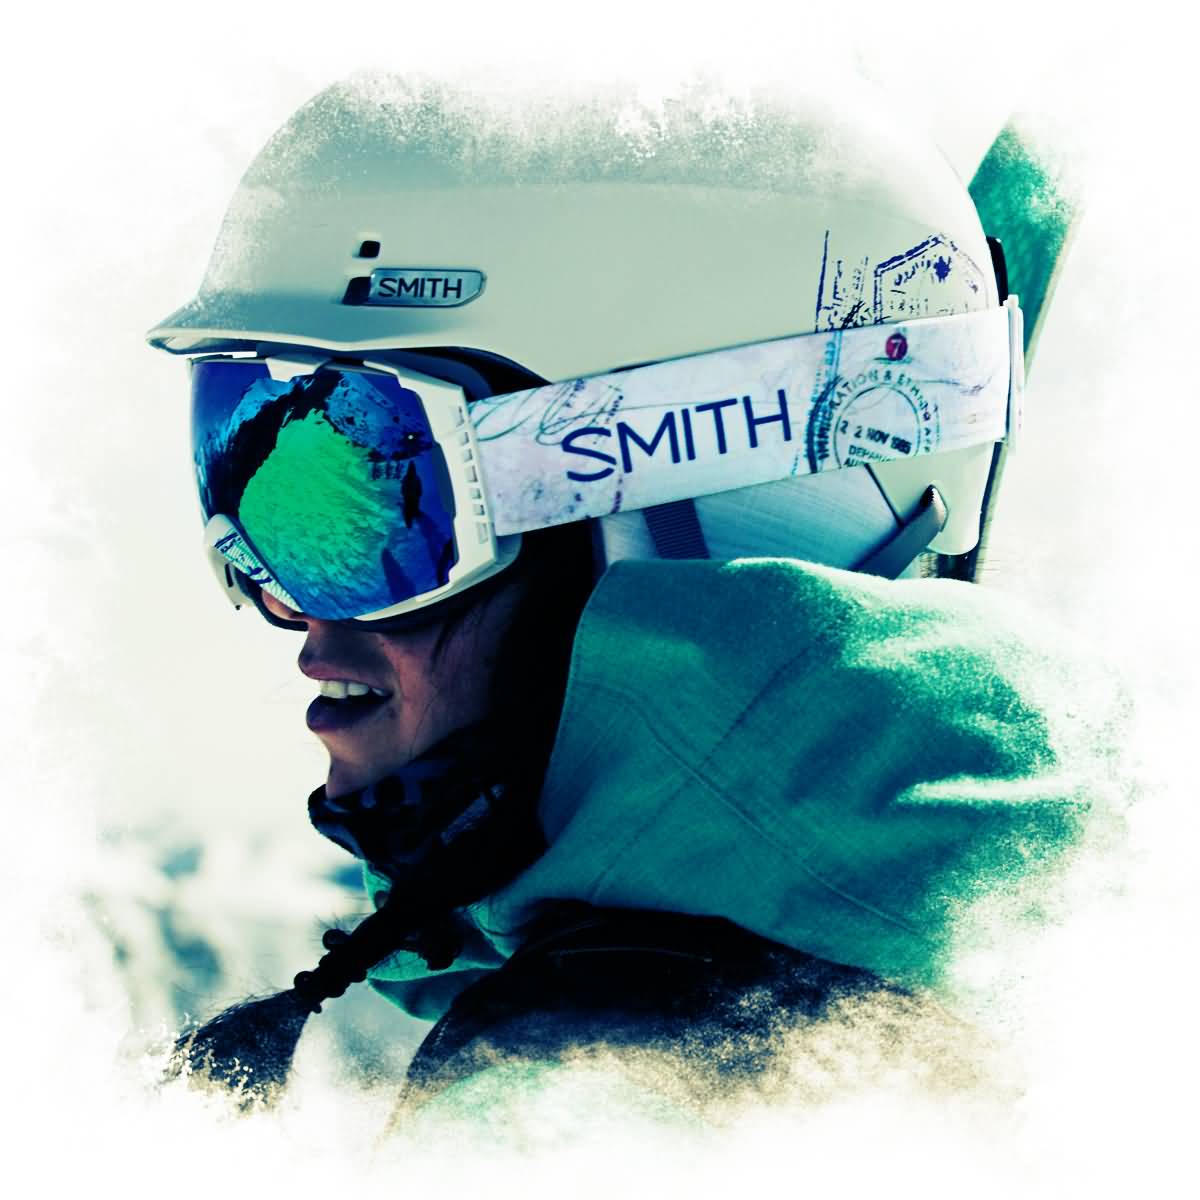 Smith Optics| Quantum Snow Helmets Collection